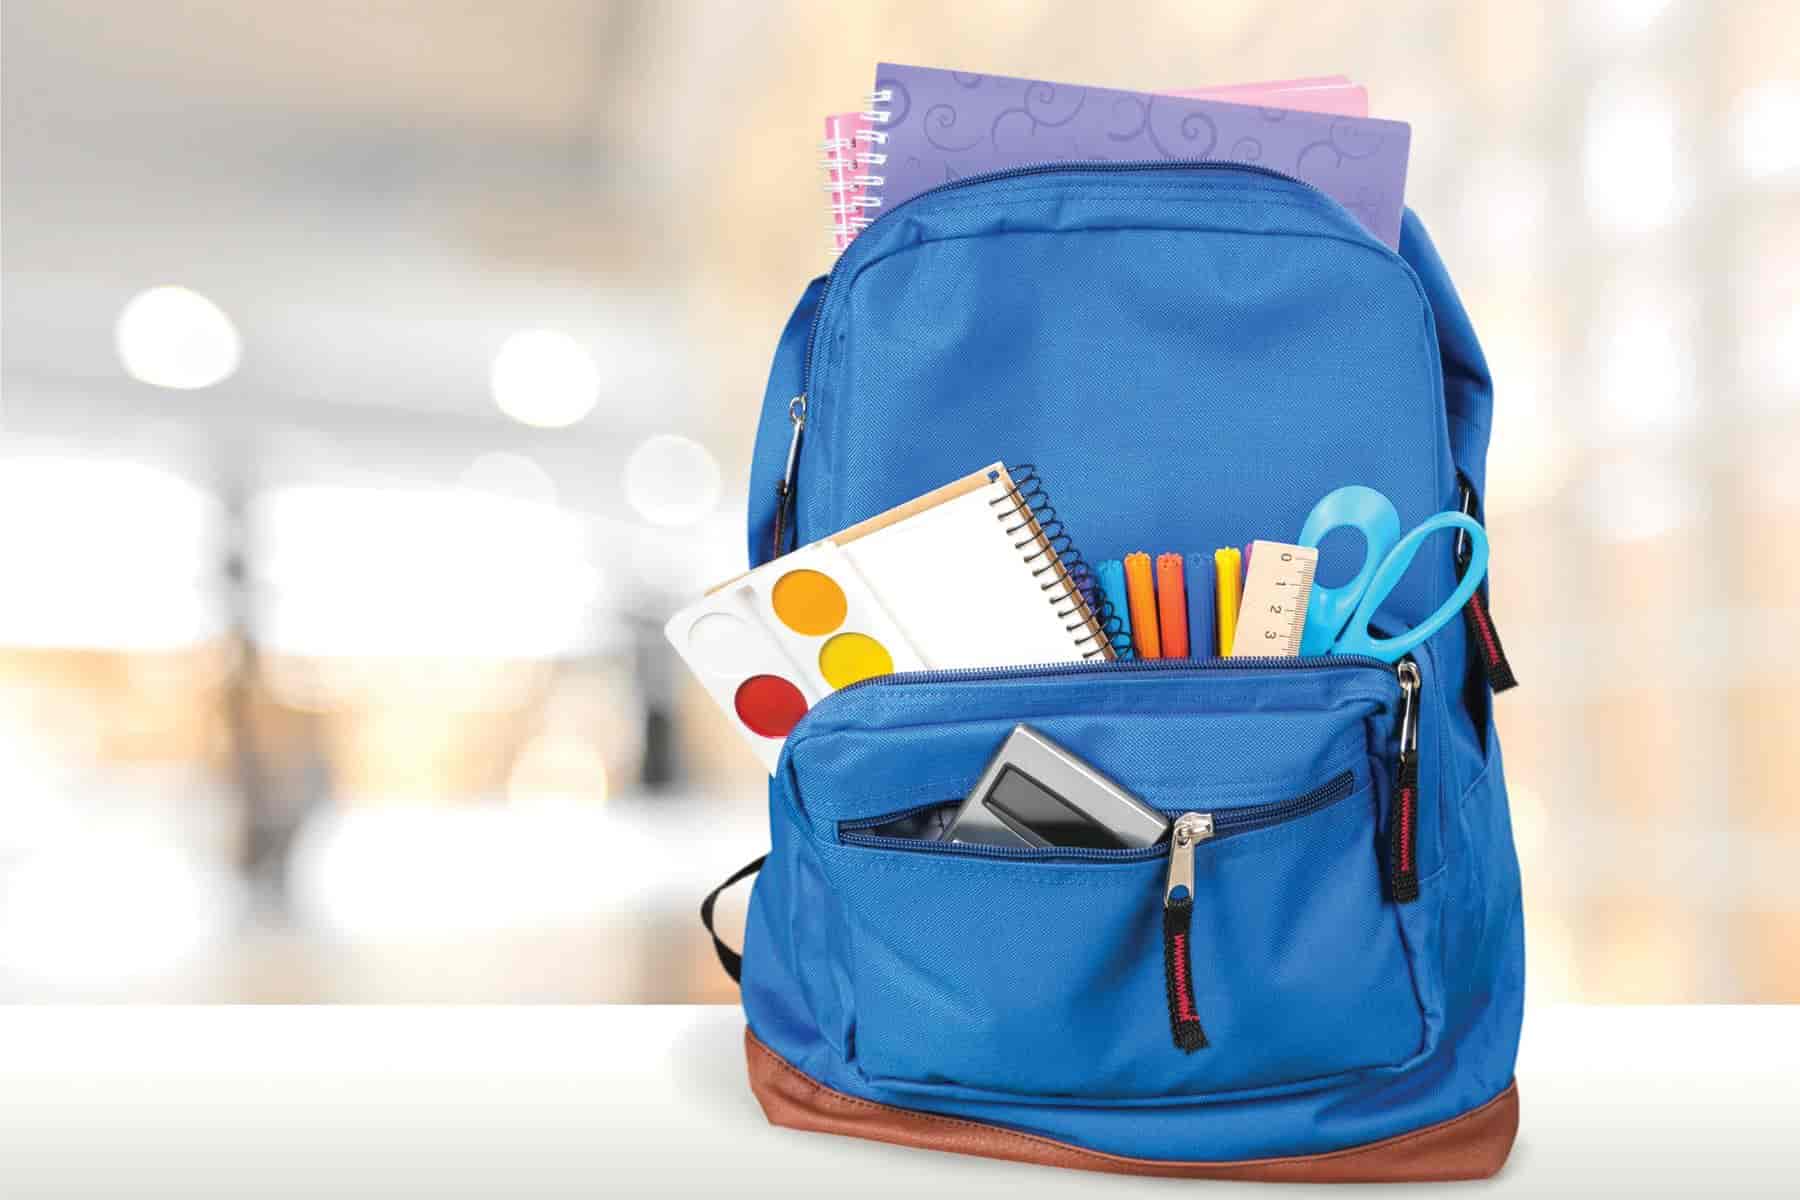  افضل انواع الحقائب المدرسية للطلاب وما هي مميزاتها 